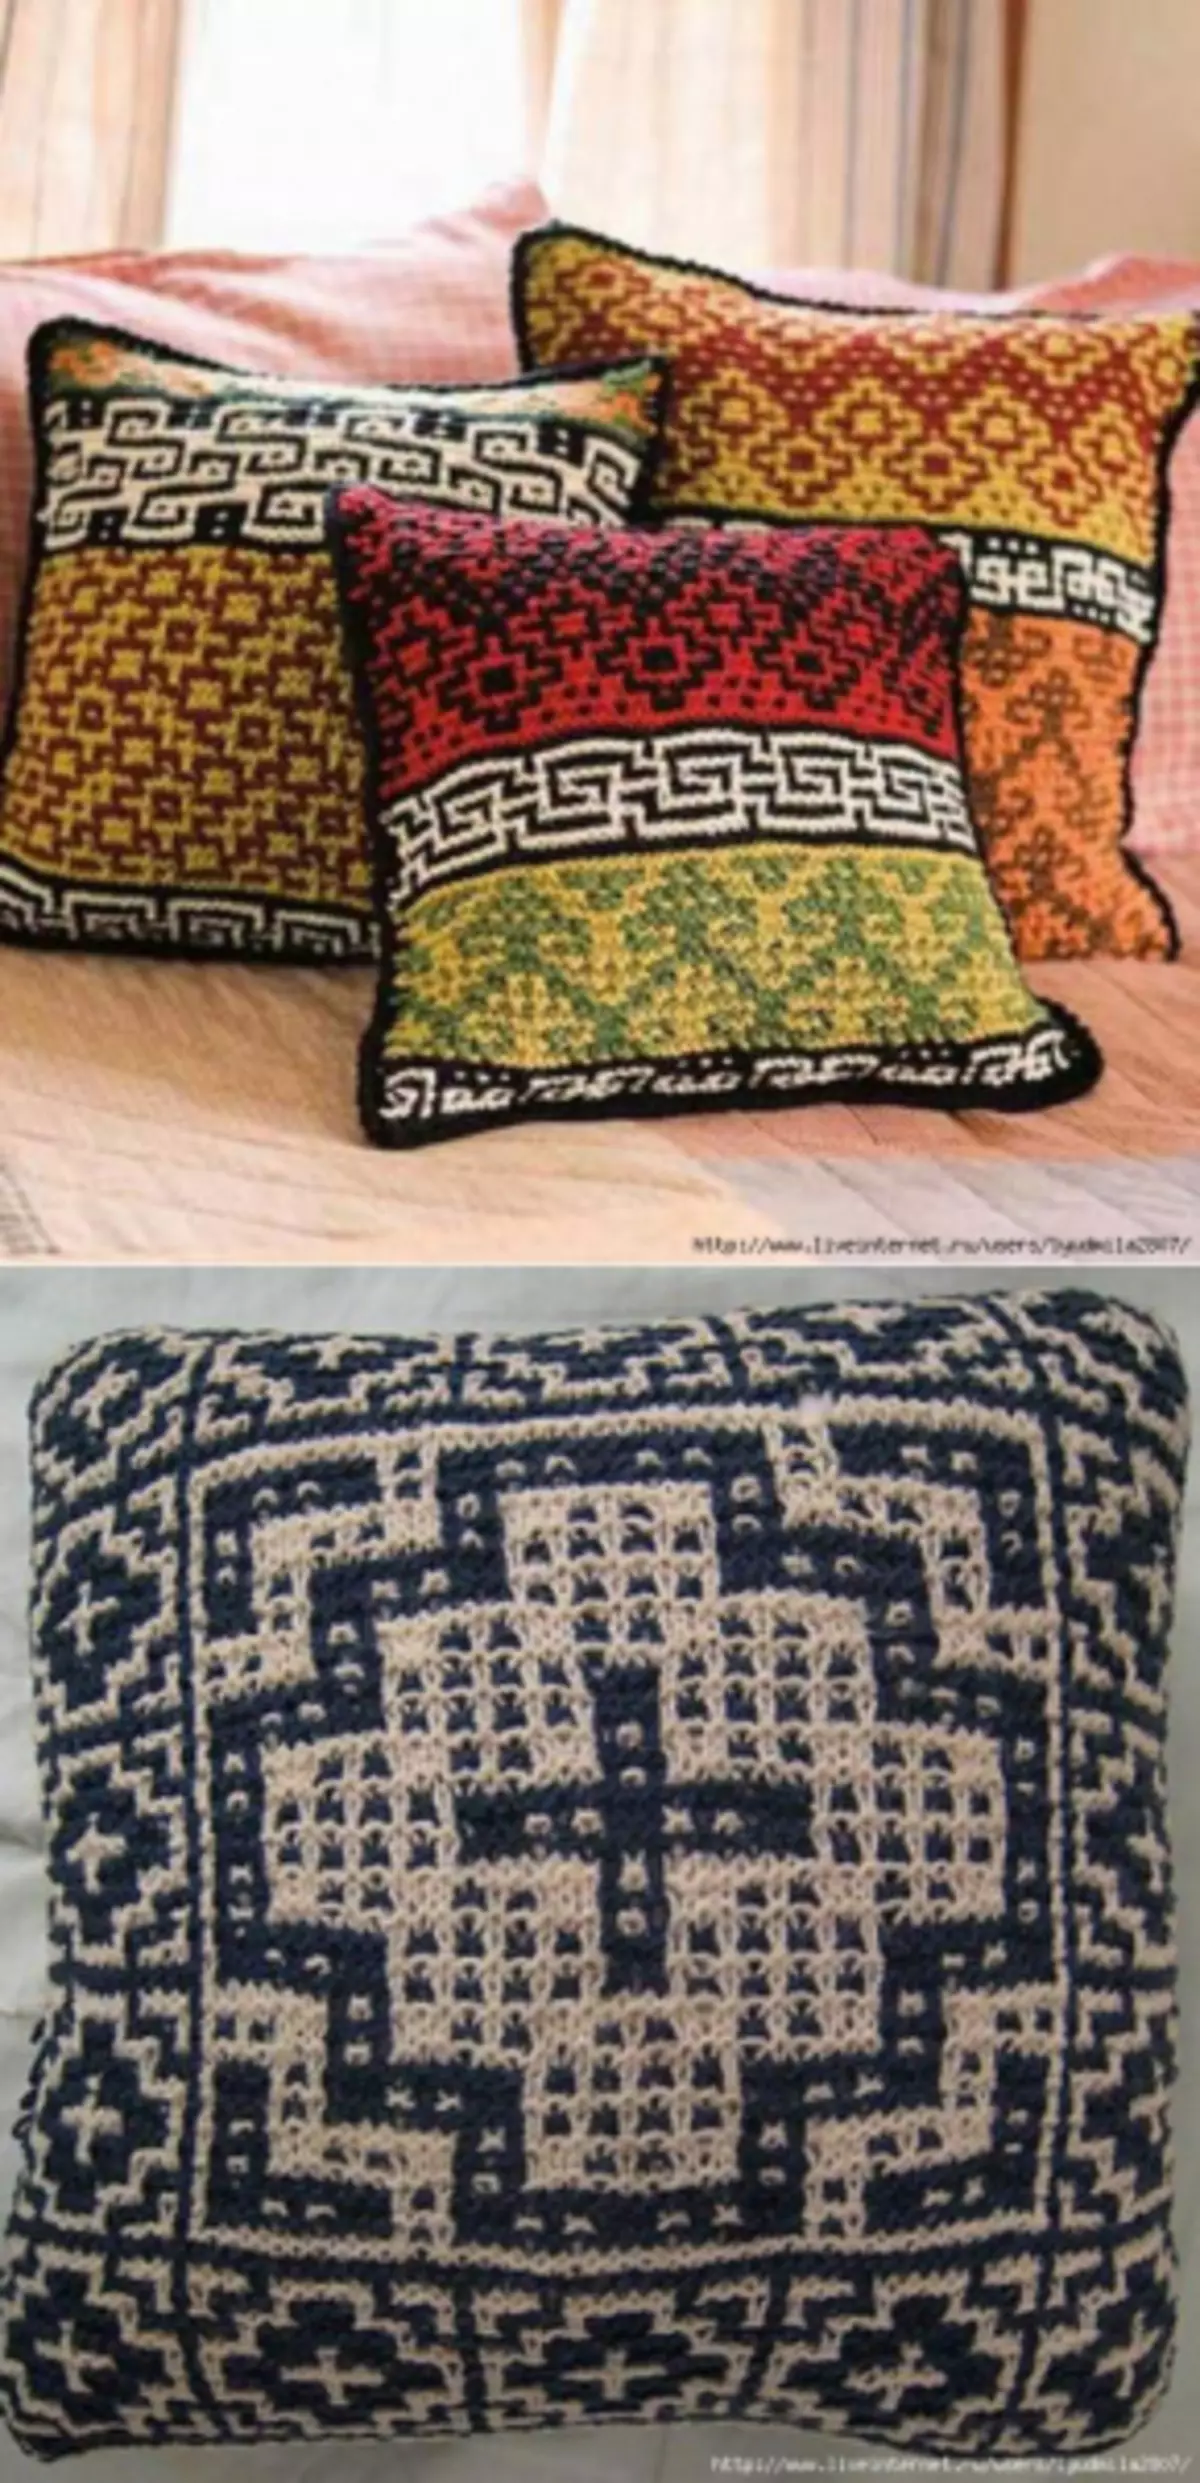 Fanjaitra knitting kamo: Zigzag sy fo miaraka amin'ny famaritana sy ny teti-dratsy